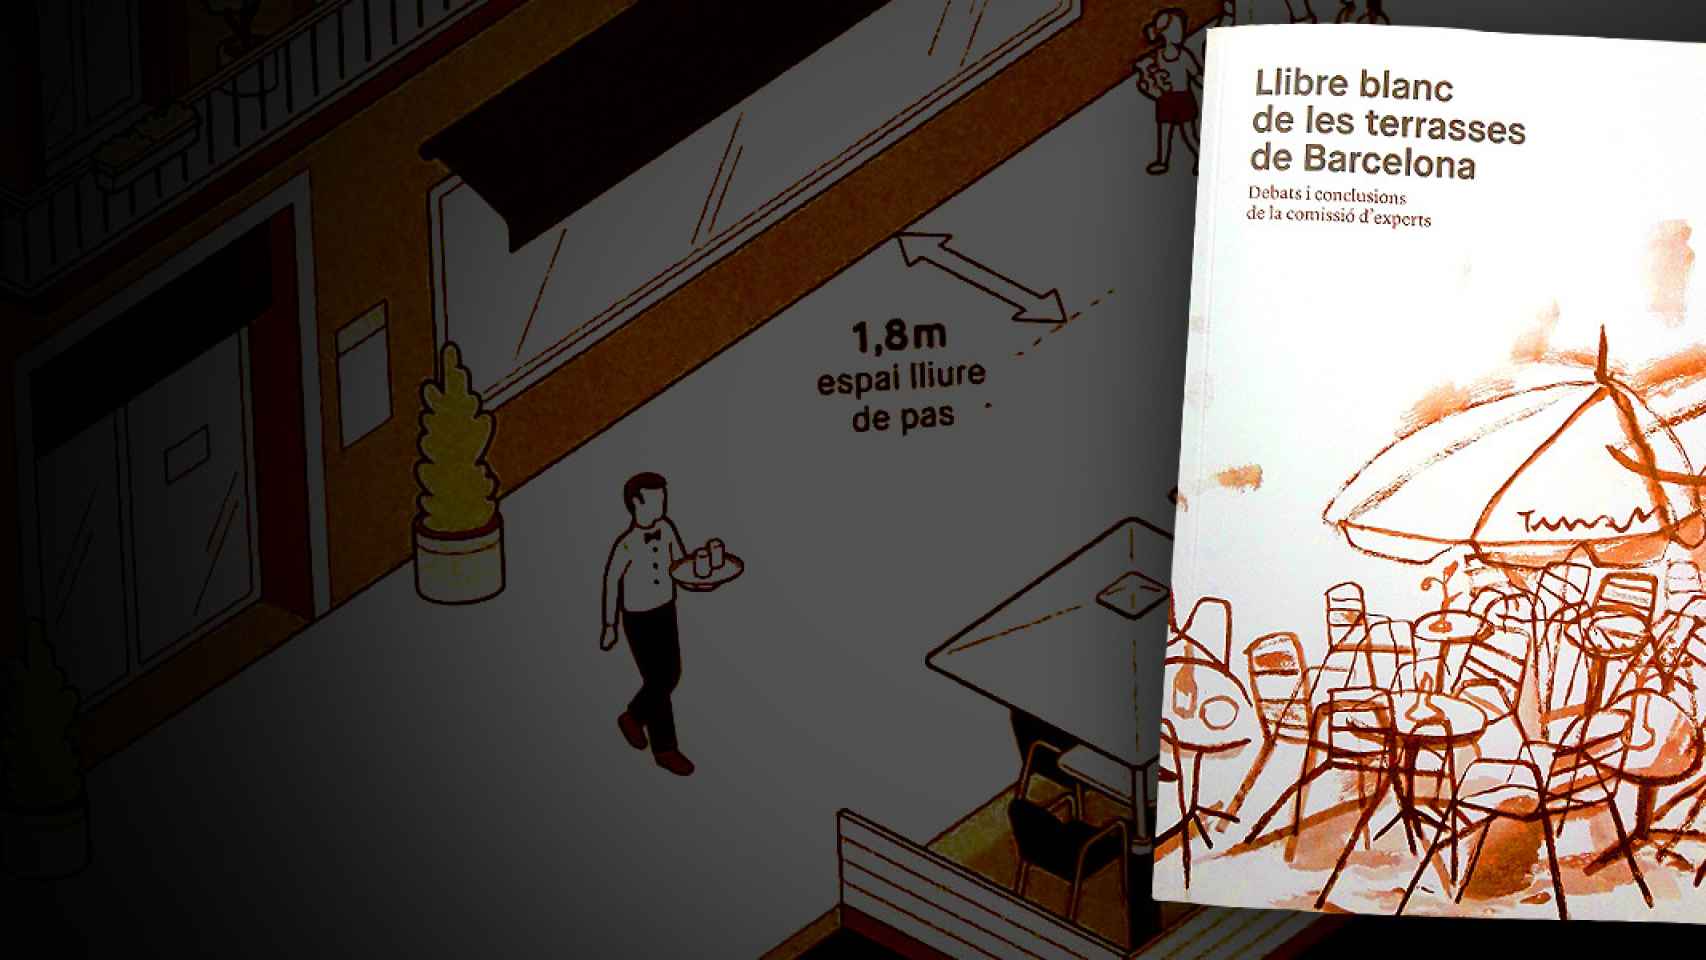 'El llibre blanc de les terrasses de Barcelona', que elabora una serie de propuestas para la normativa de Colau / CG